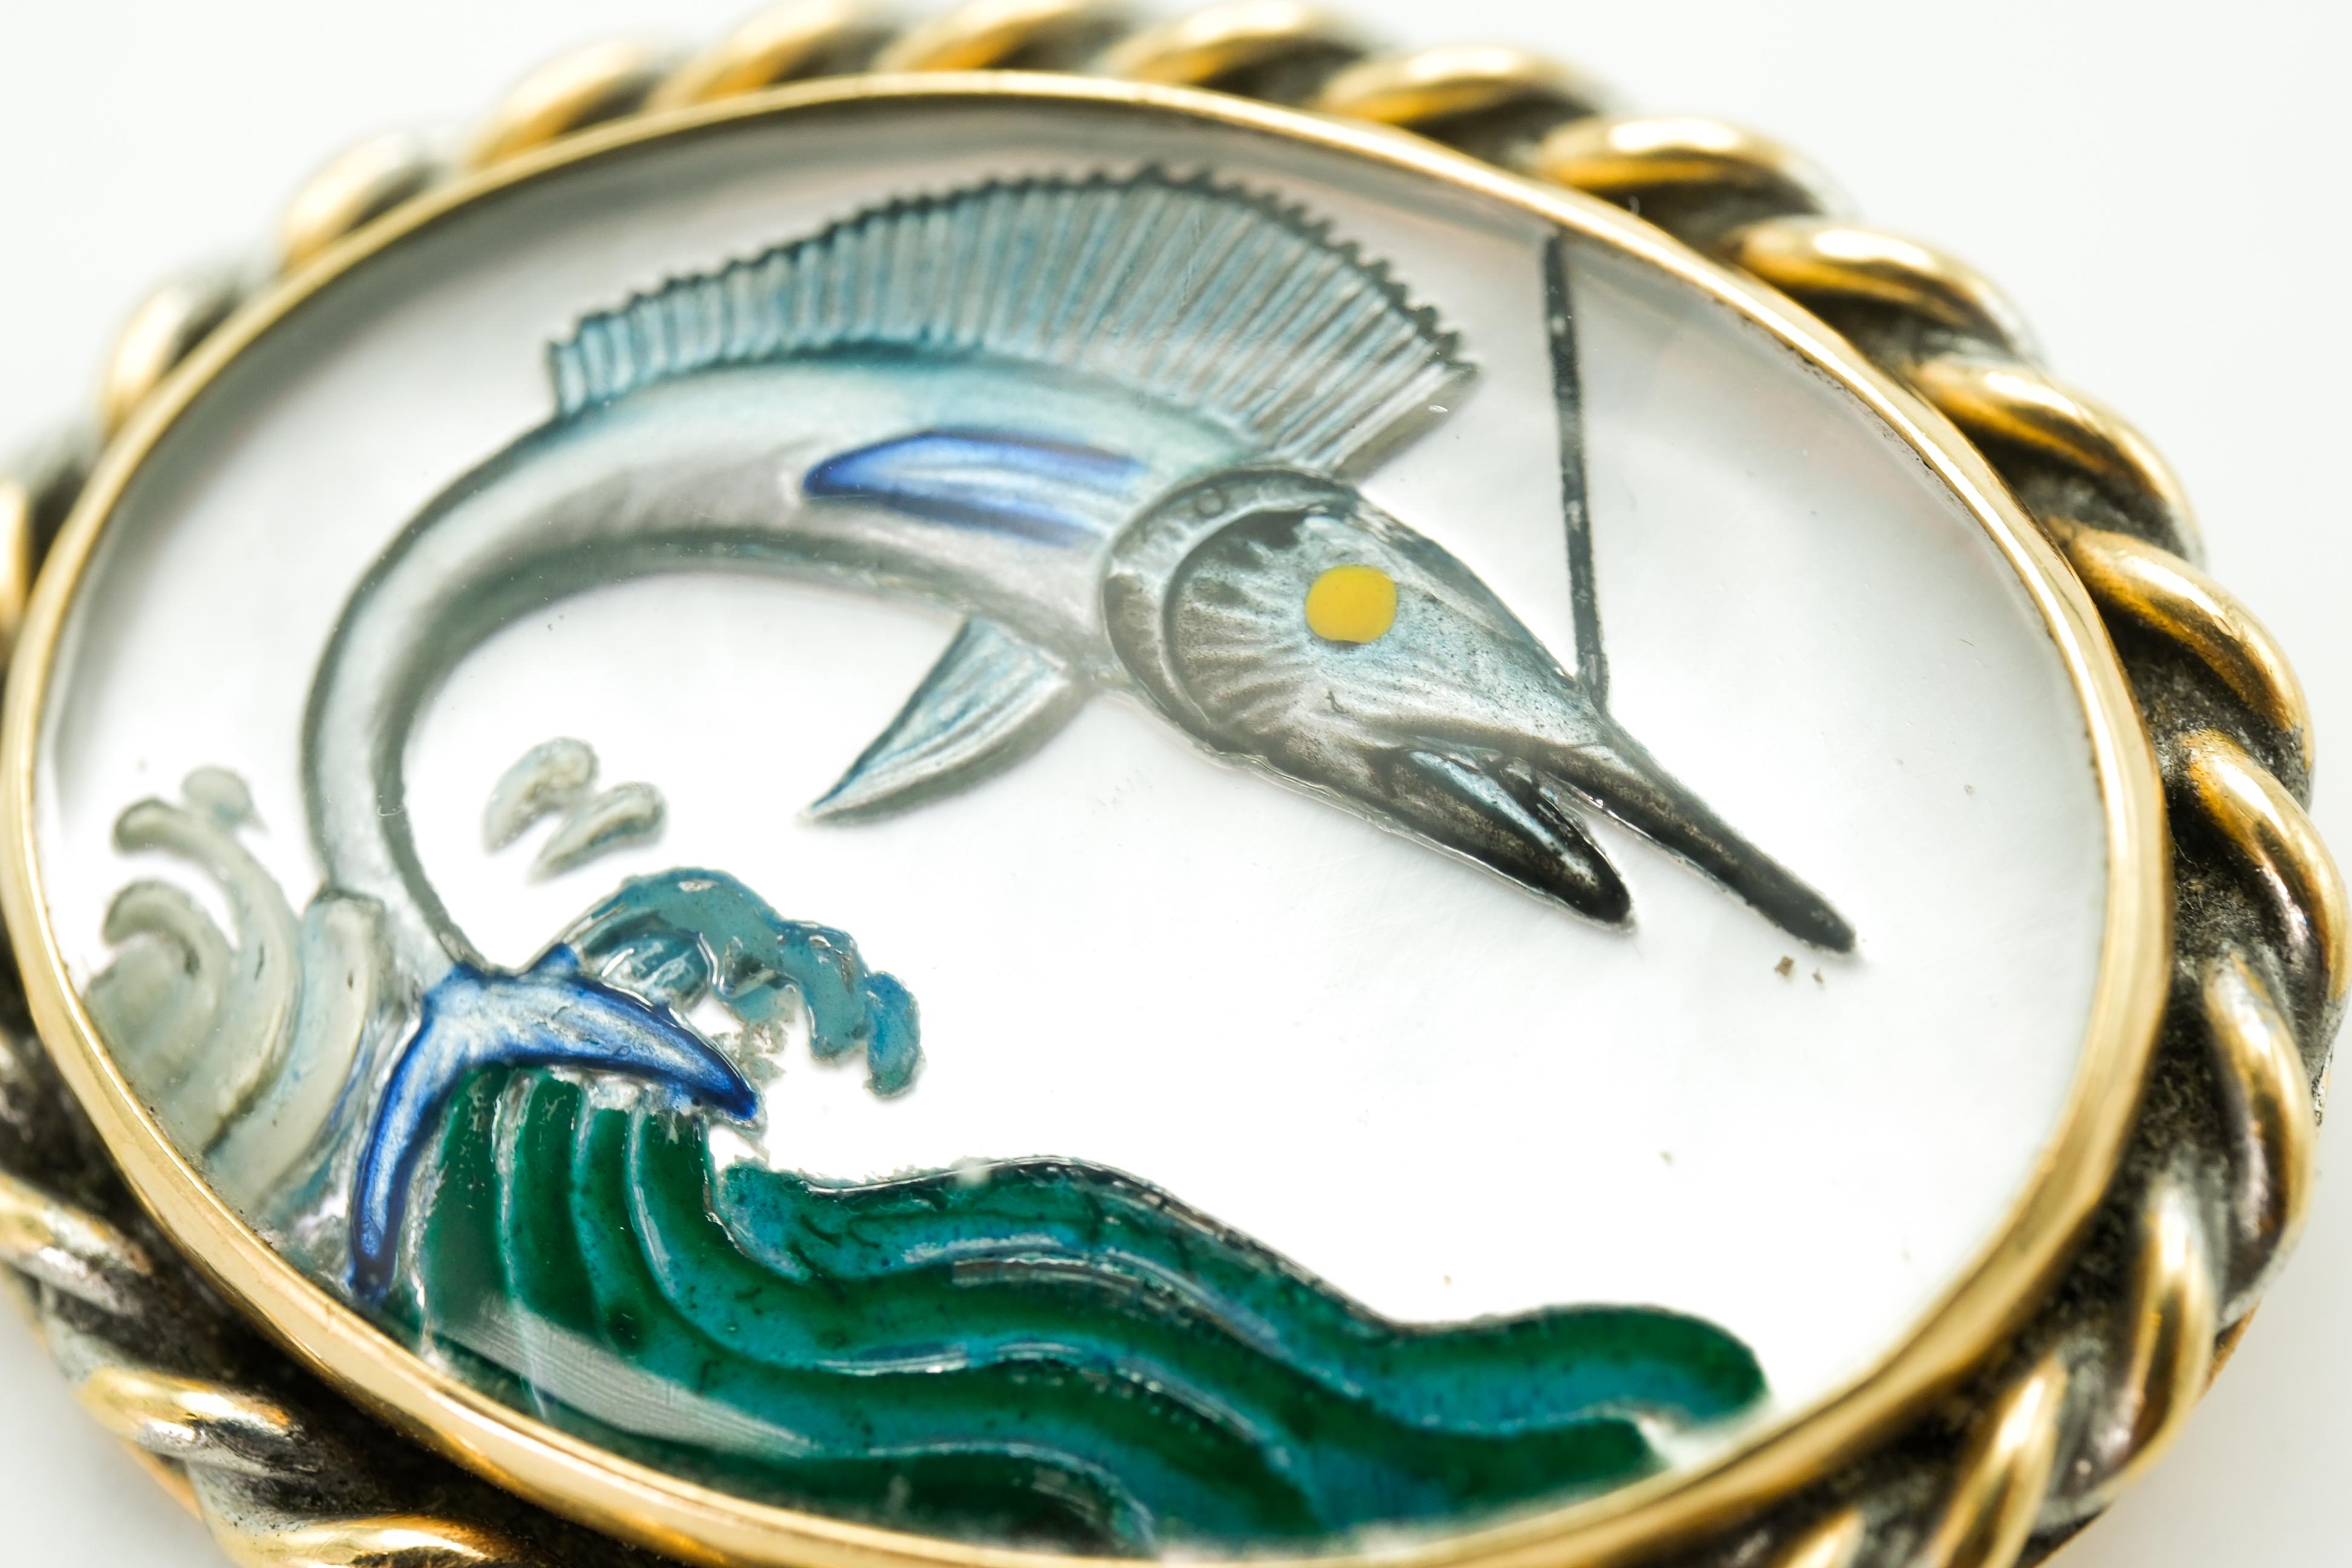 Diese Brosche im Vintage-Stil ist aus 14-karätigem Gelbgold gefertigt und zeigt eine Hinterglasmalerei mit einem Marlin. Die dargestellte Szene zeigt einen aktiven Marlin, der sich dynamisch aus dem Meer erhebt und im Kristall eingefangen ist. Das